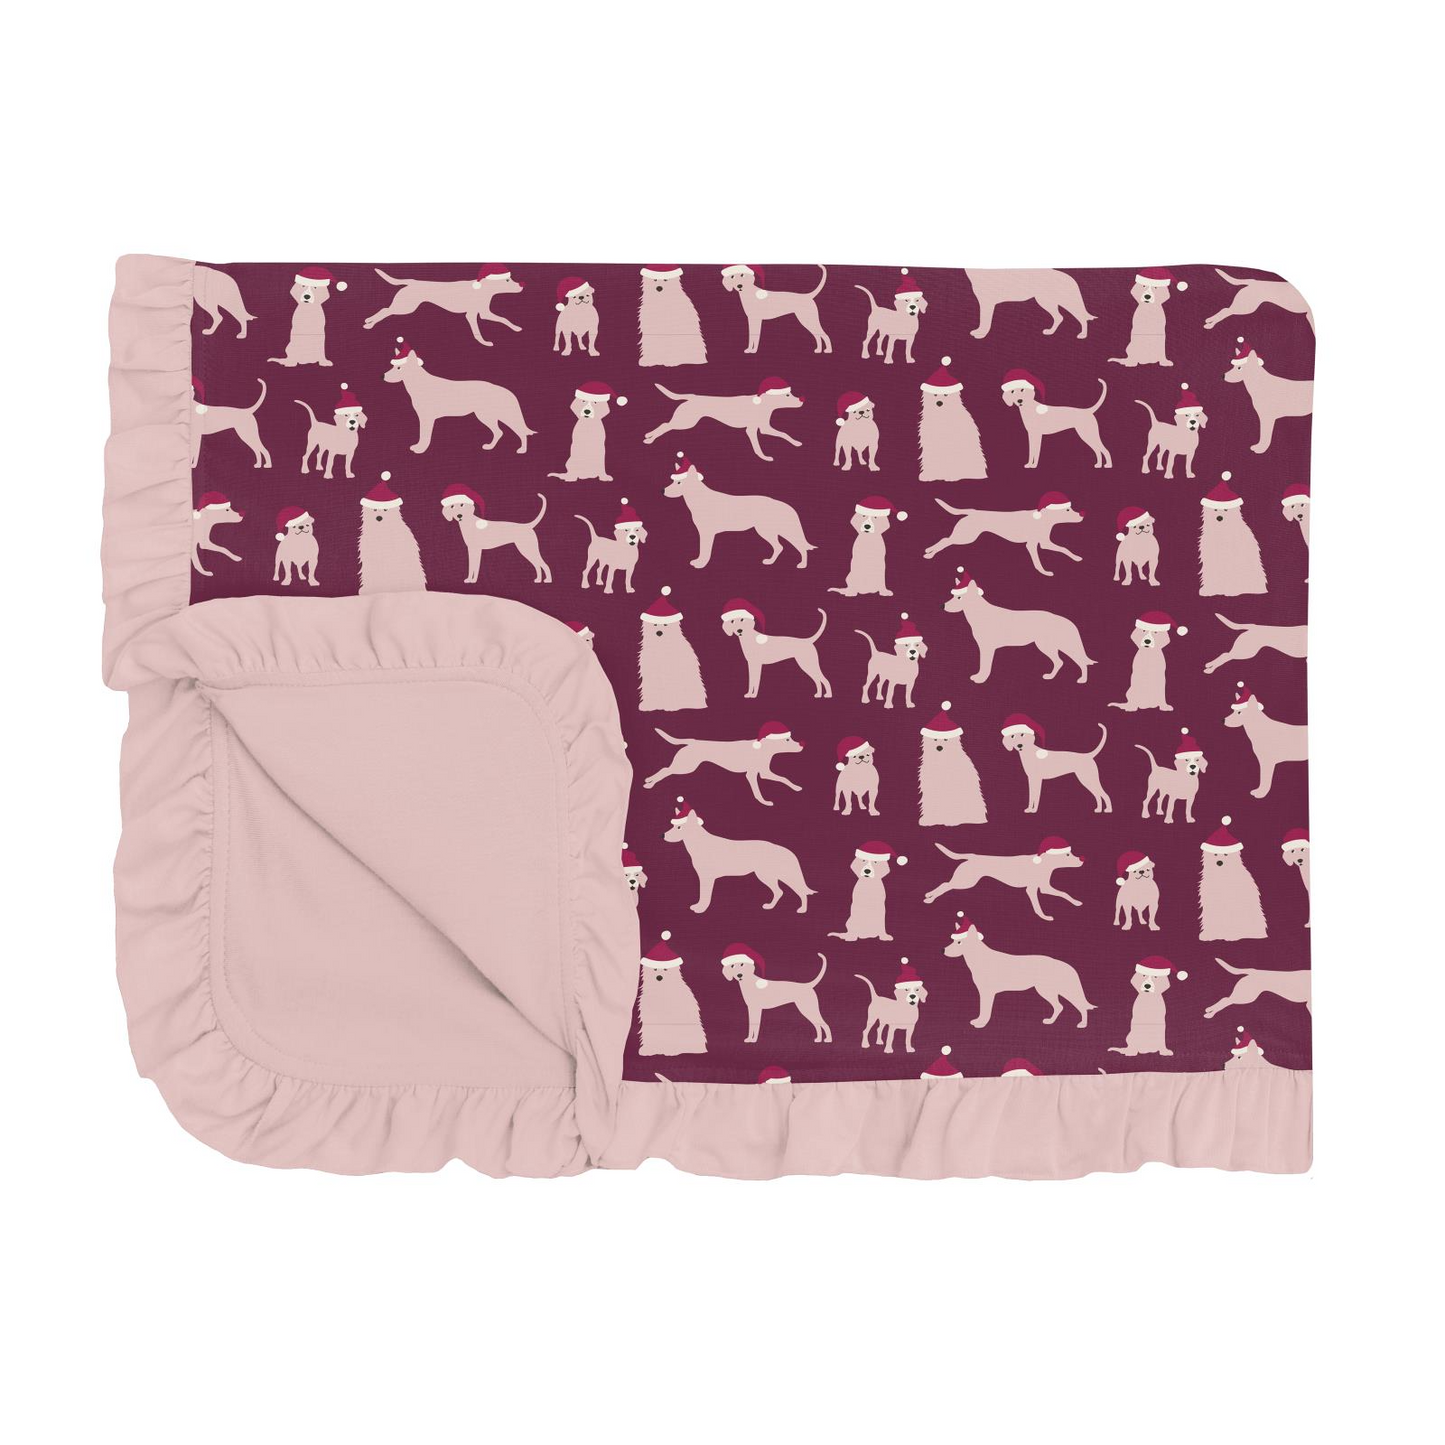 Kickee Pants Print Ruffle Toddler Blanket: Melody Santa Dogs